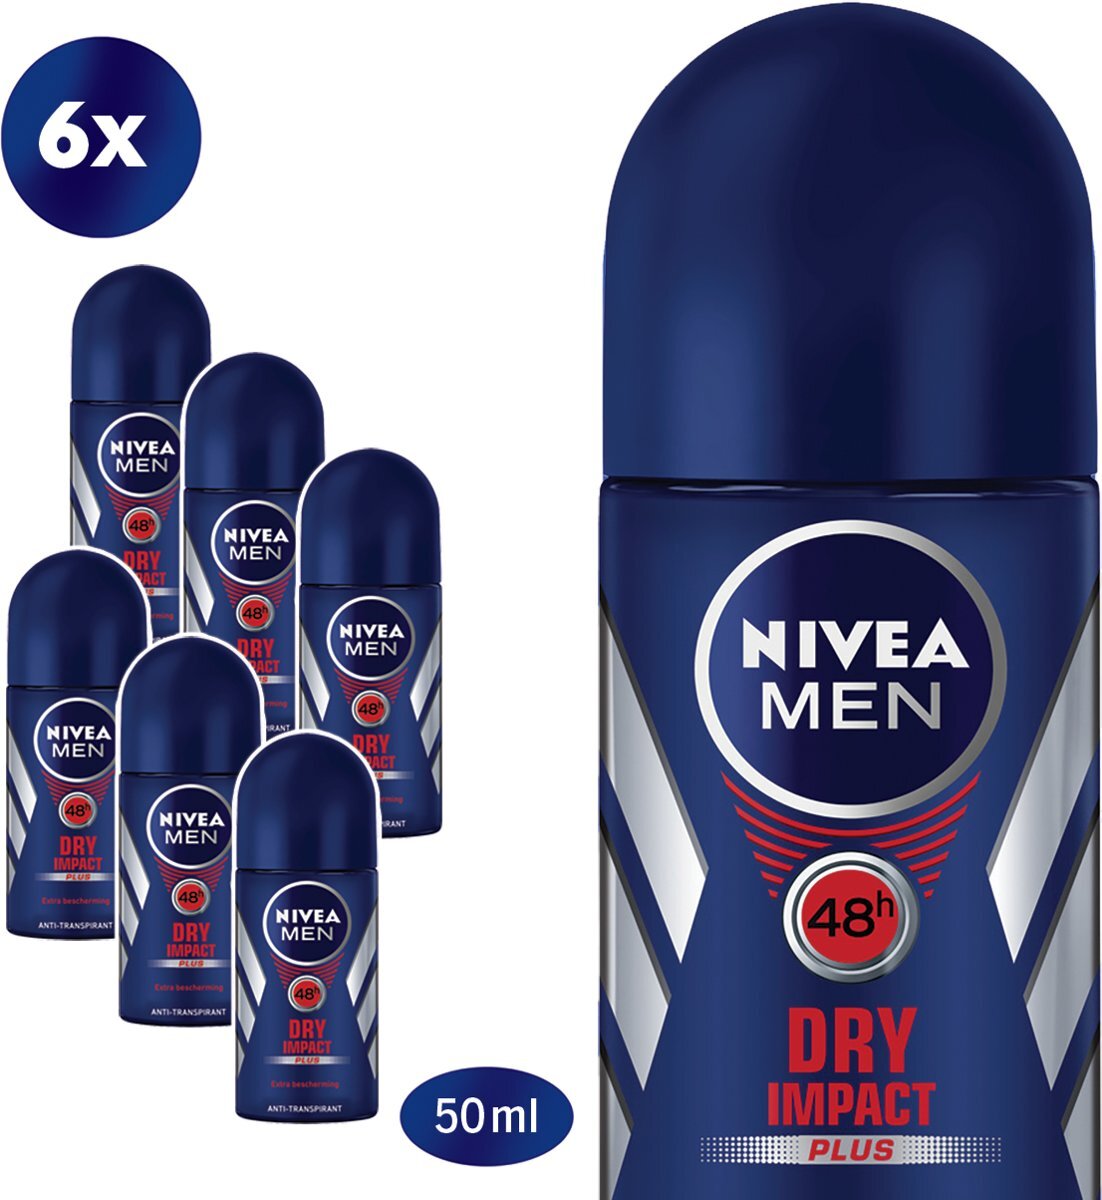 Nivea MEN Dry Impact - 6 x 50 ml - Voordeelverpakking - Deodorant Roller